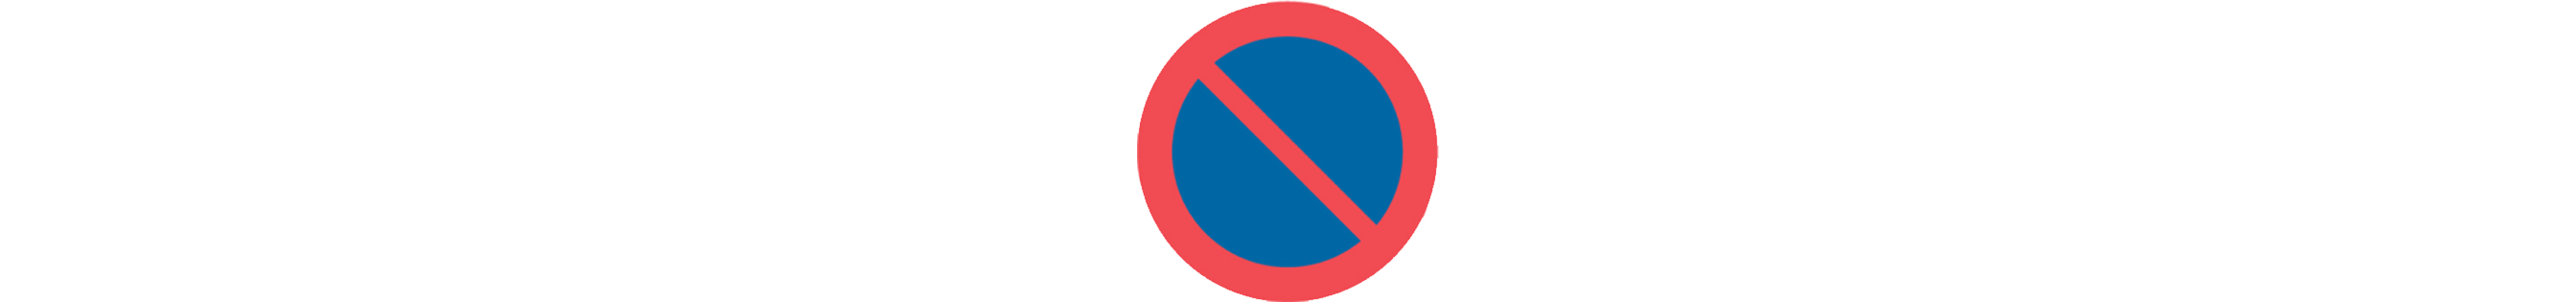 Blå, rund skylt med röd ring och ett diagonalt streck som visar parkeringsförbud.